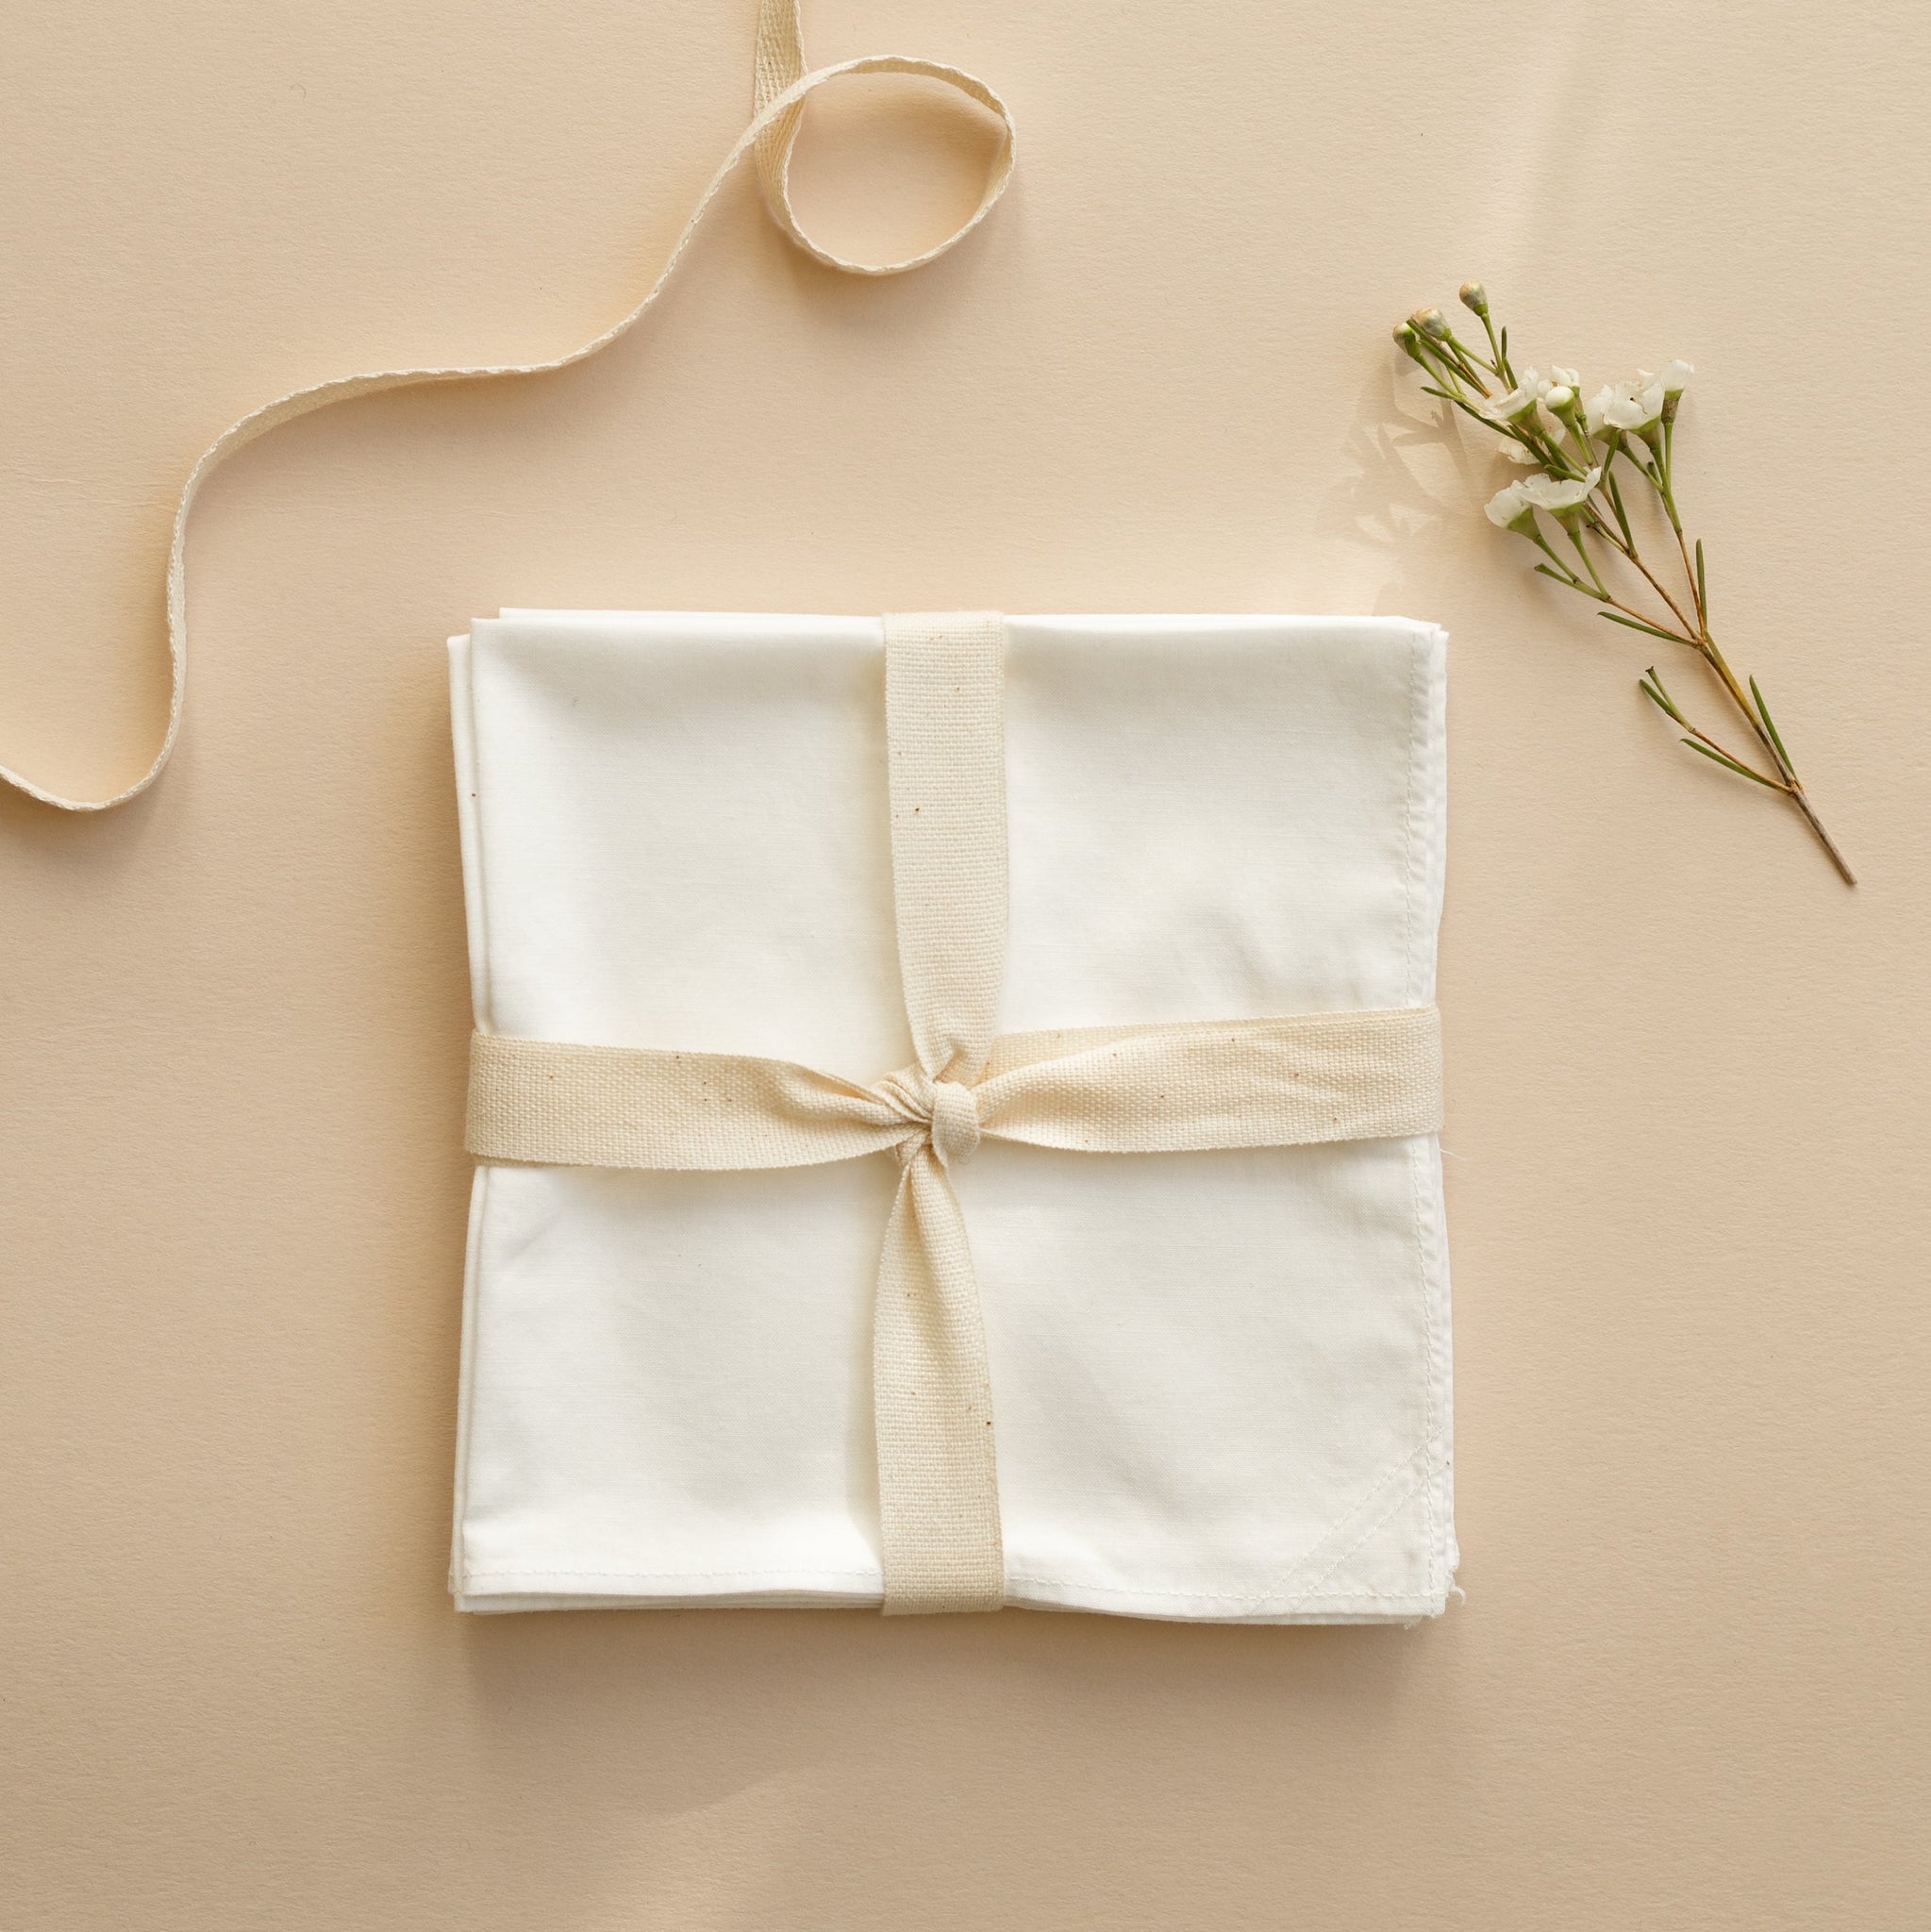 4 mouchoirs en tissu blanc coton de qualité. Mouchoir en tissu fabriqué Cholet